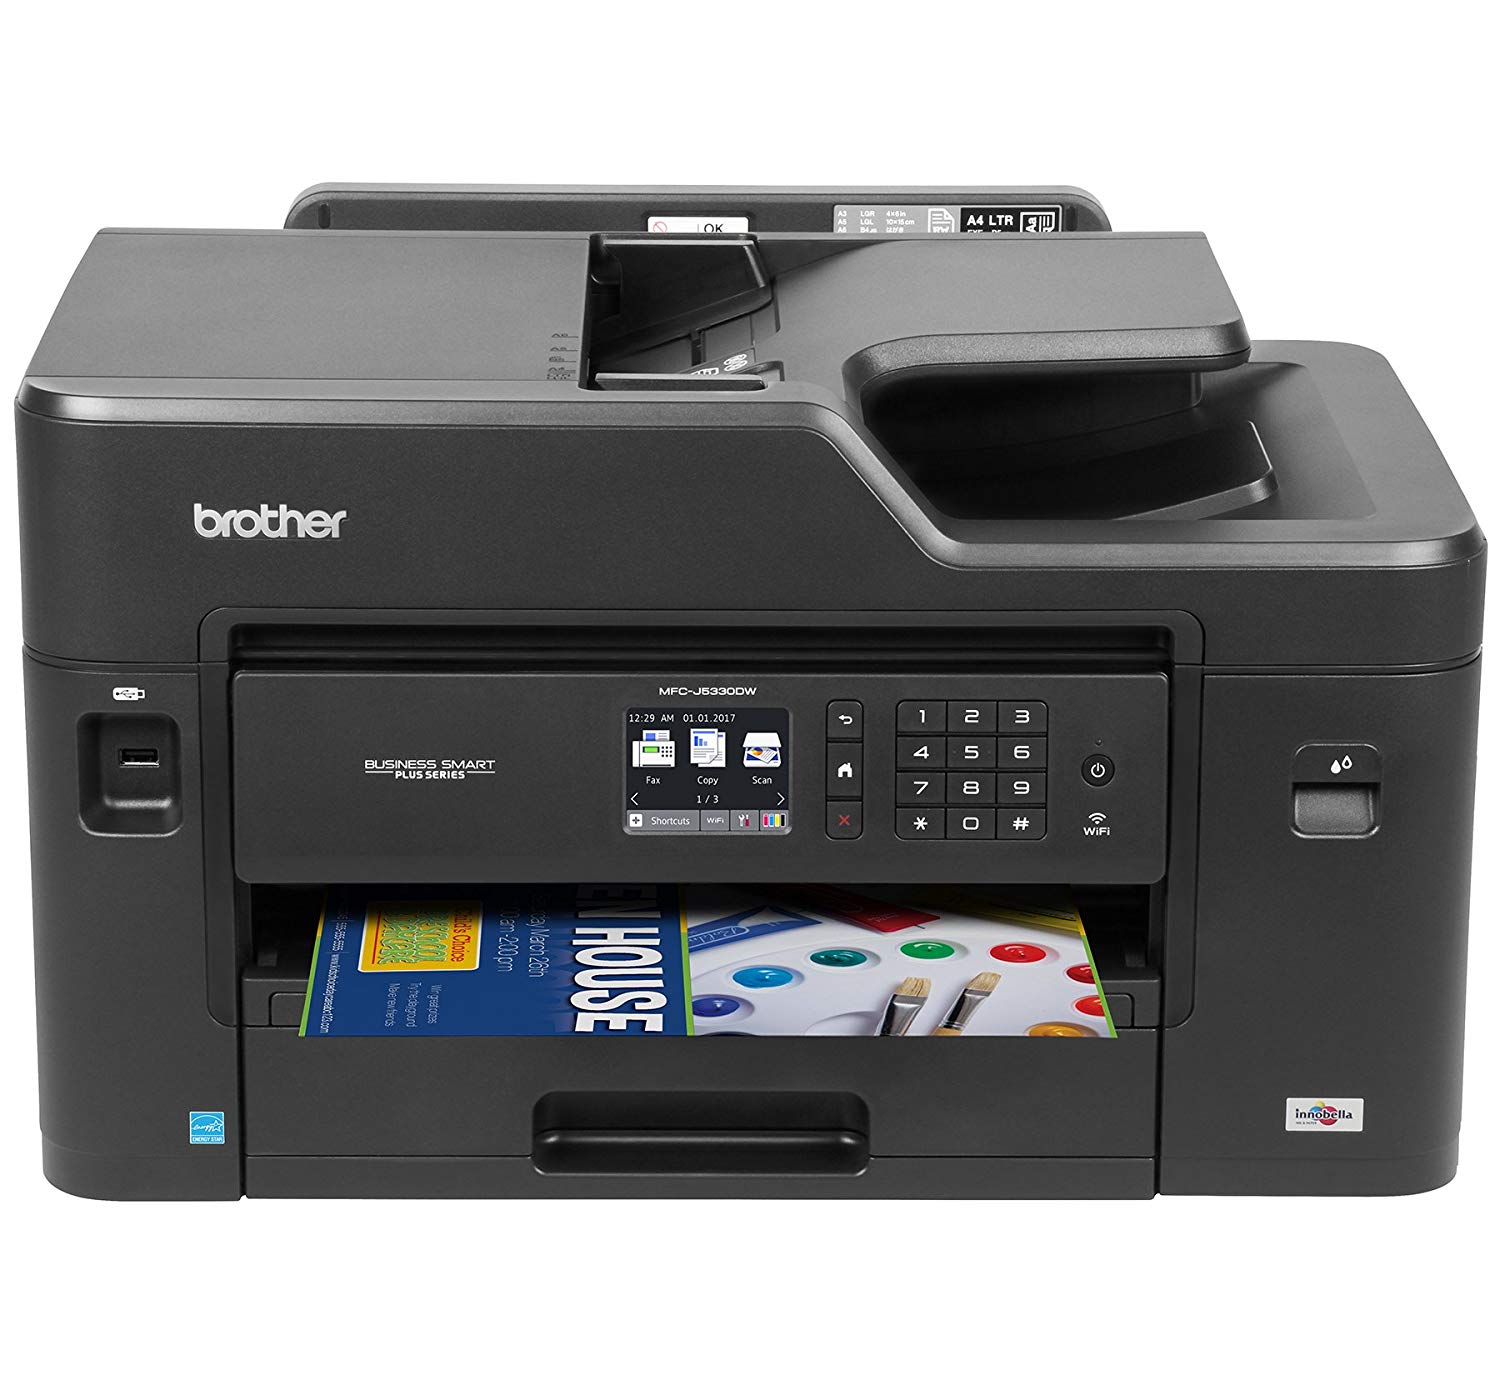 Brother Printer طابعة ألوان لاسلكية MFCJ5330DW مع ماسح ...